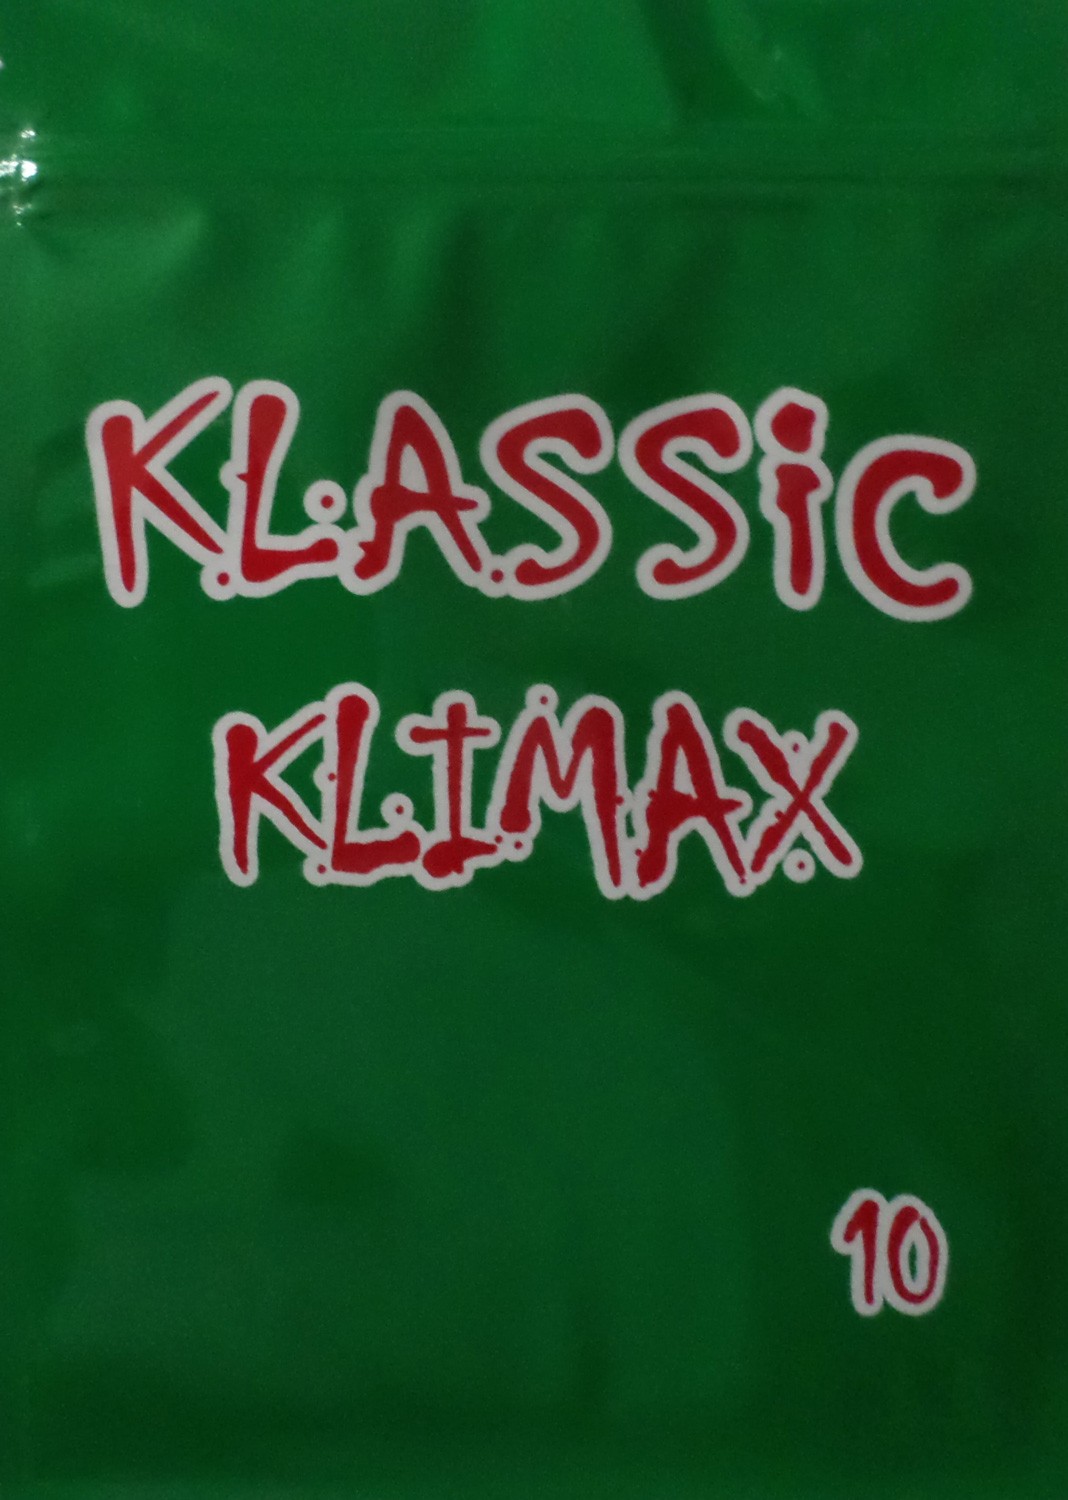 Klassik Klimax 10g incense 3x pack